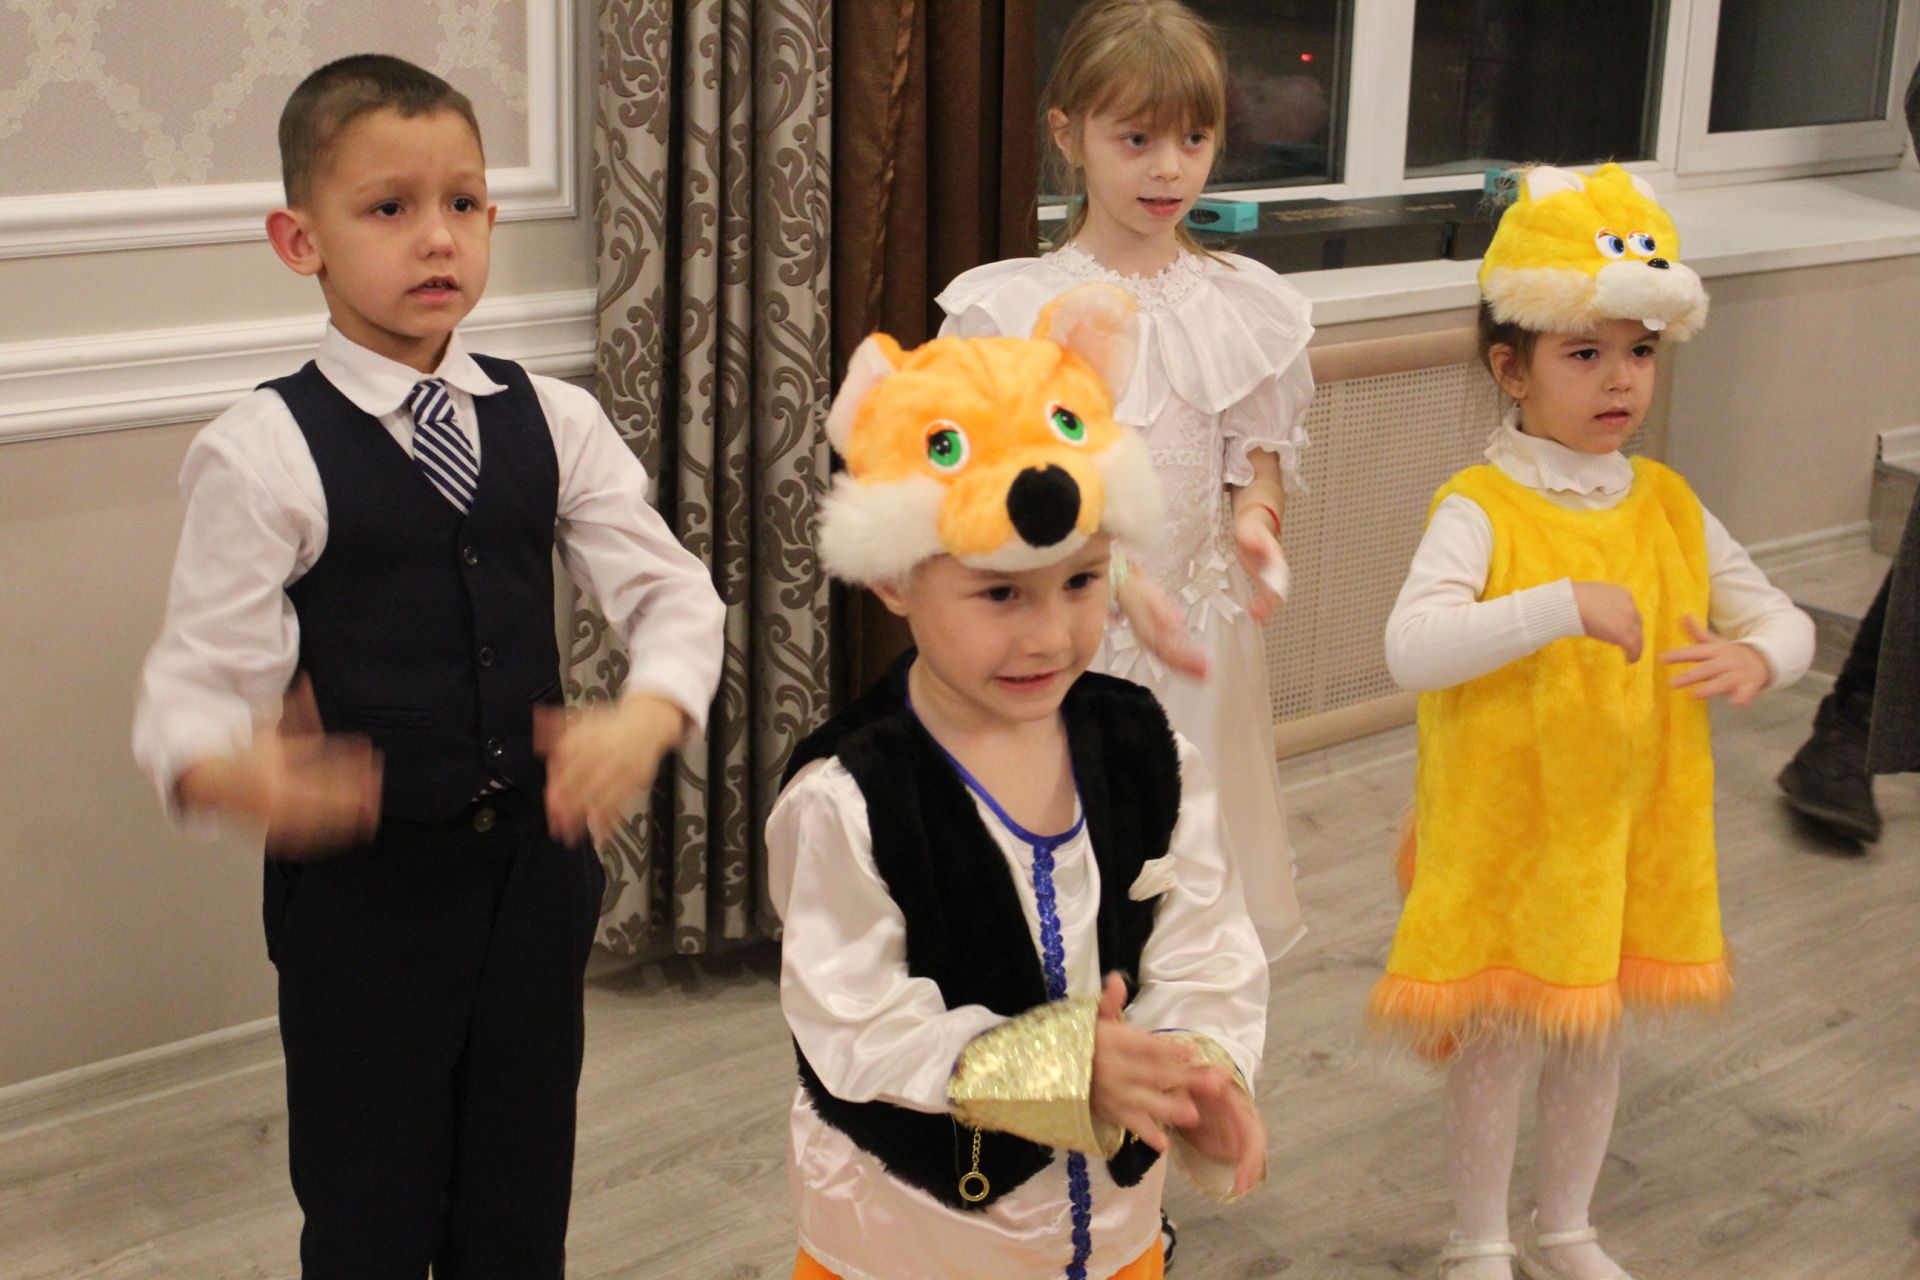 Глава района В. Чершинцев поздравил воспитанников приюта «Камские зори» с наступающим Новым годом